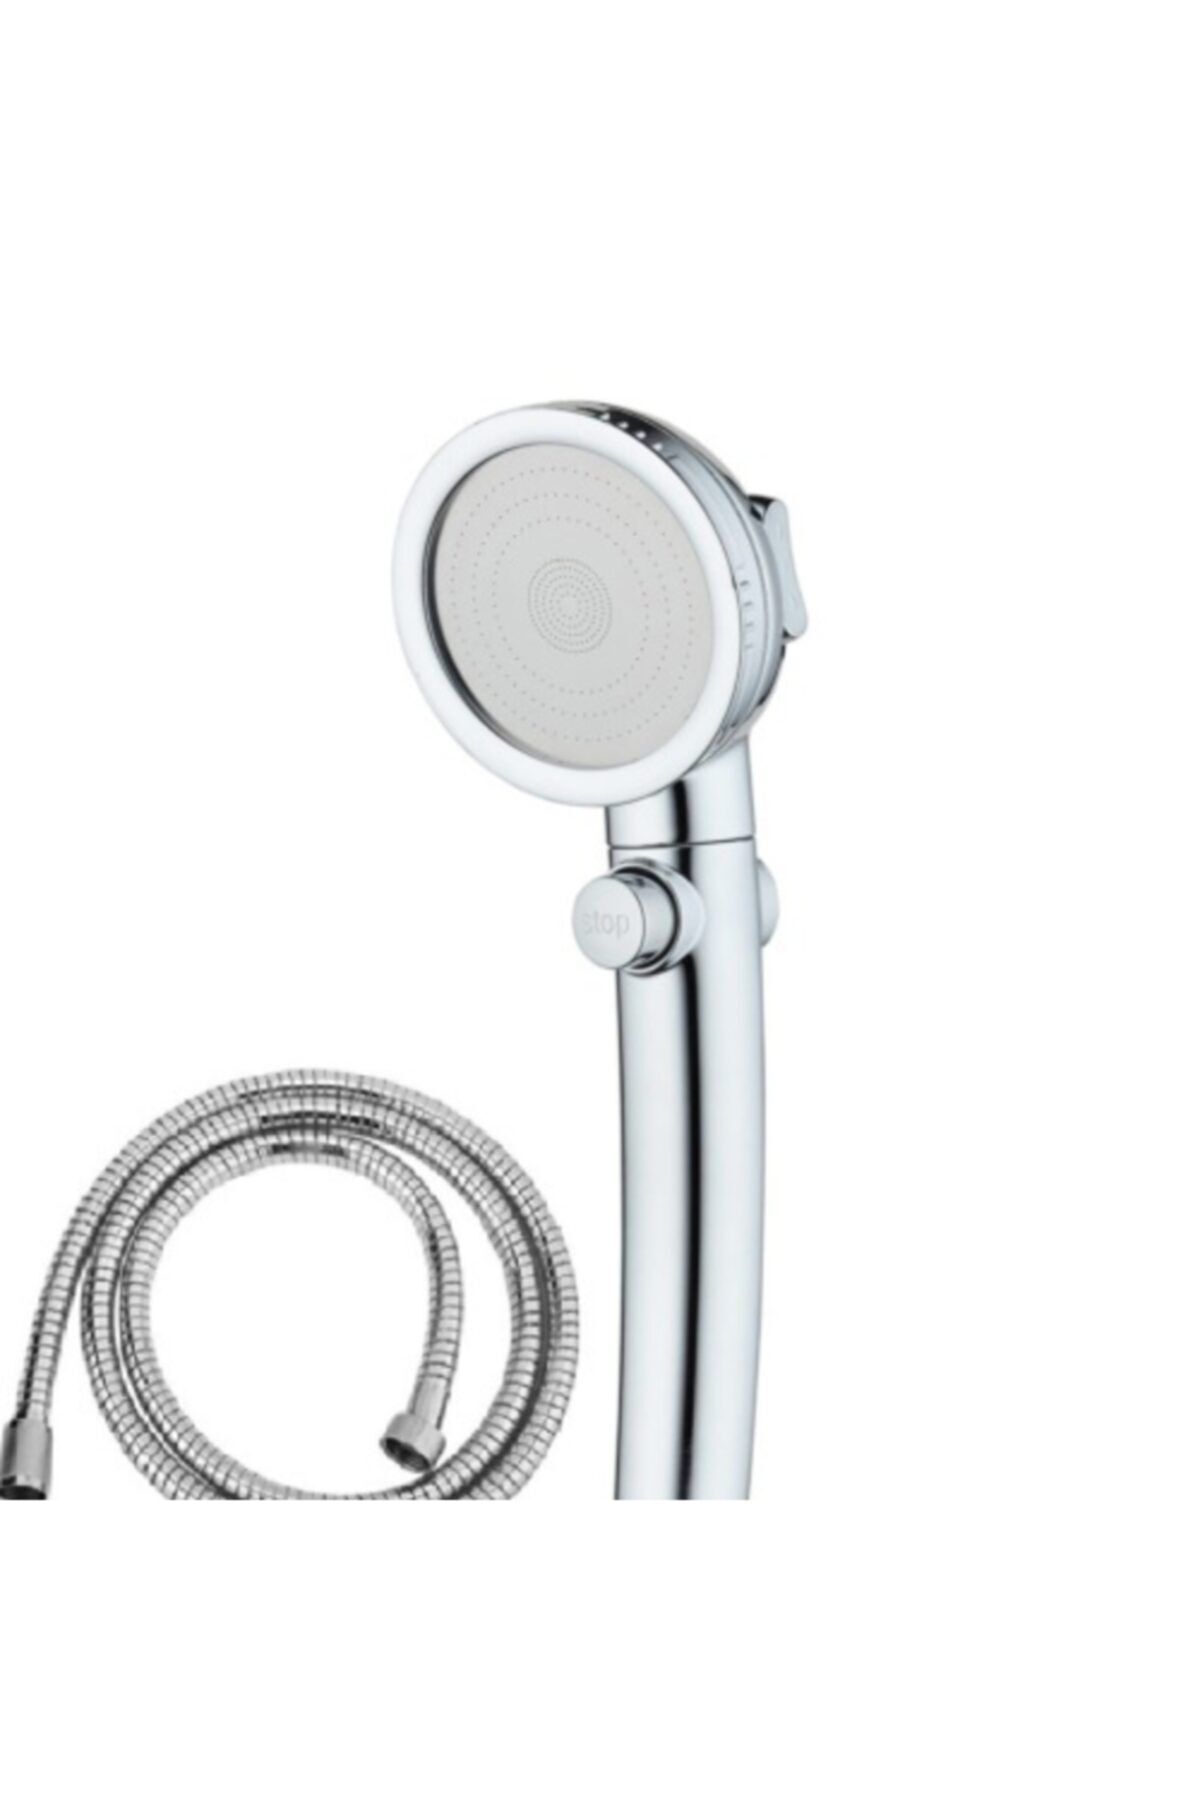 AKCAKESE Duş Başlığı Krom 3 Fonksiyonlu Sprey Ayarı Açık/kapalı Durak Anahtarı Duş Spiral Hortumu ( 150 Cm)